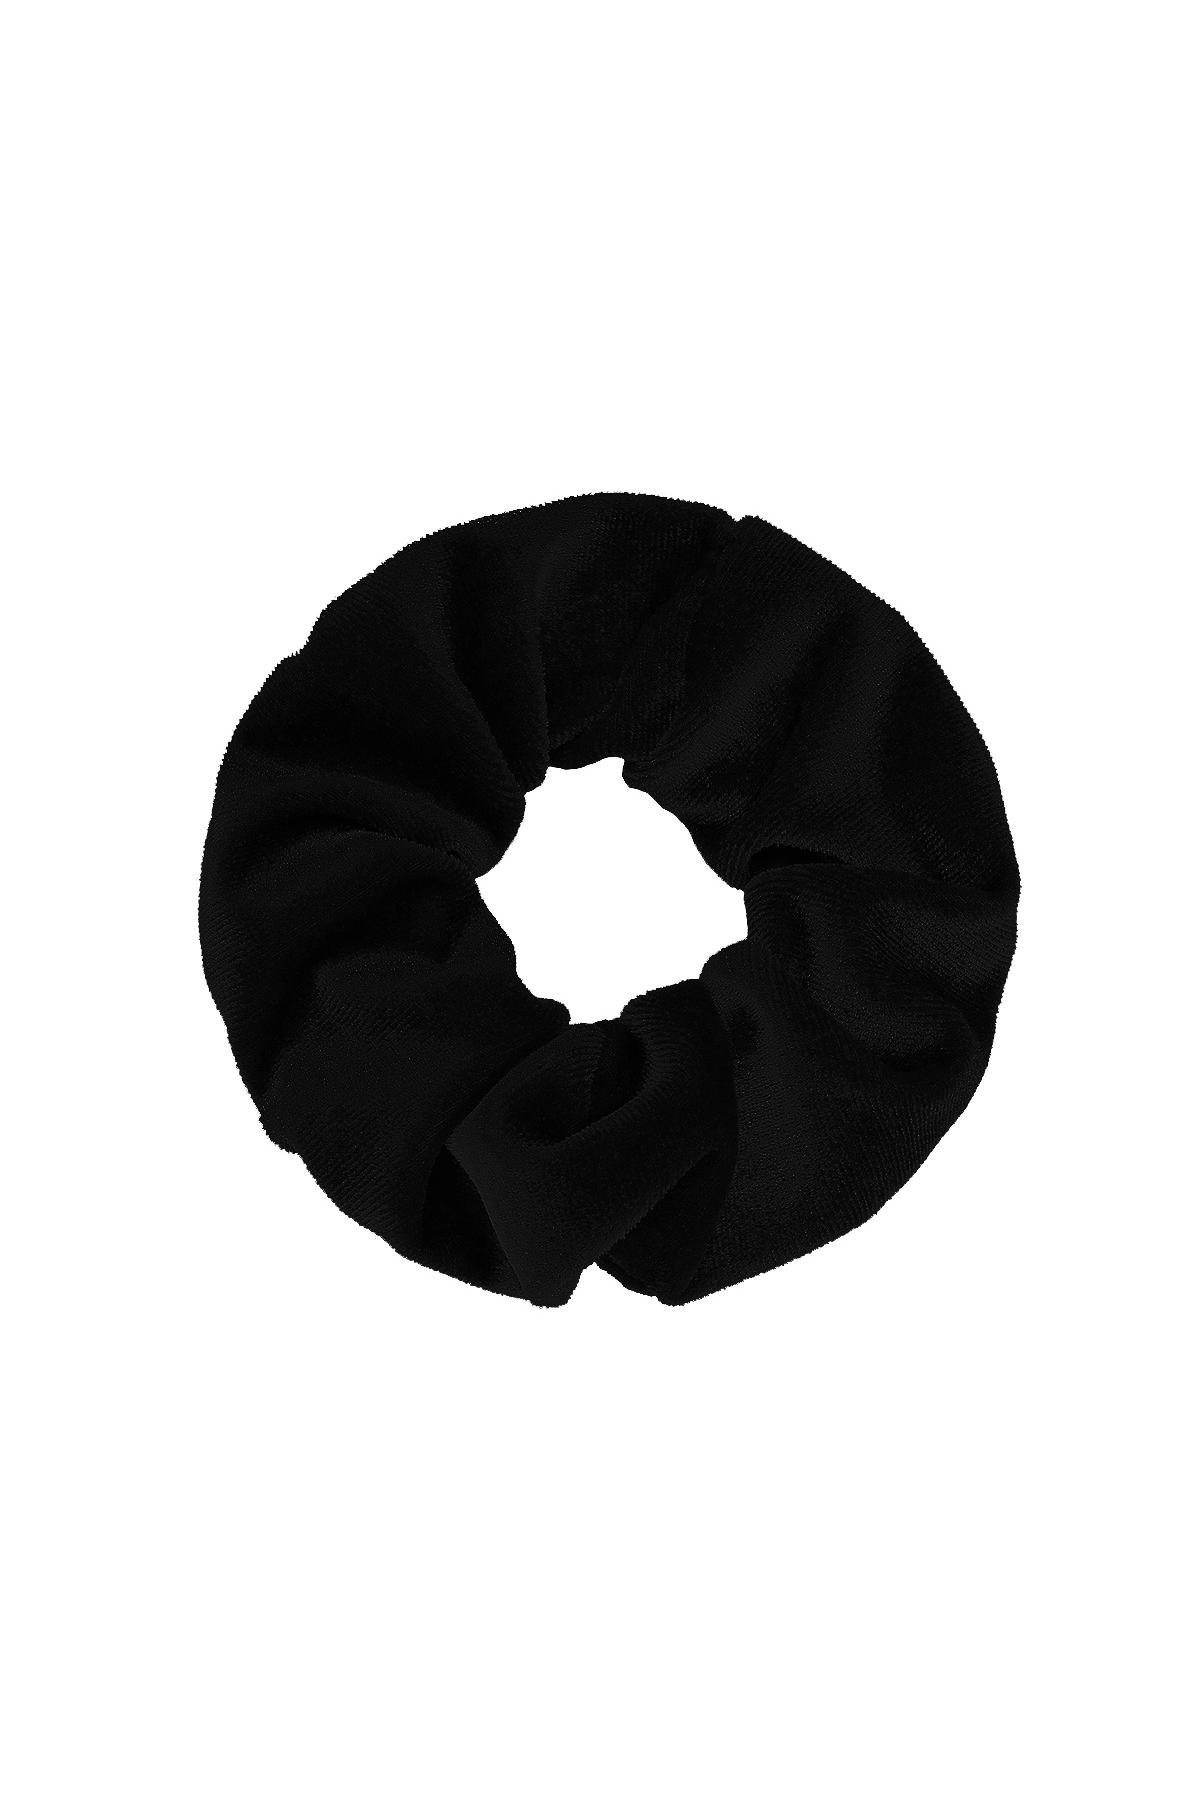 Temel saç lastiği - siyah Black Polyester 